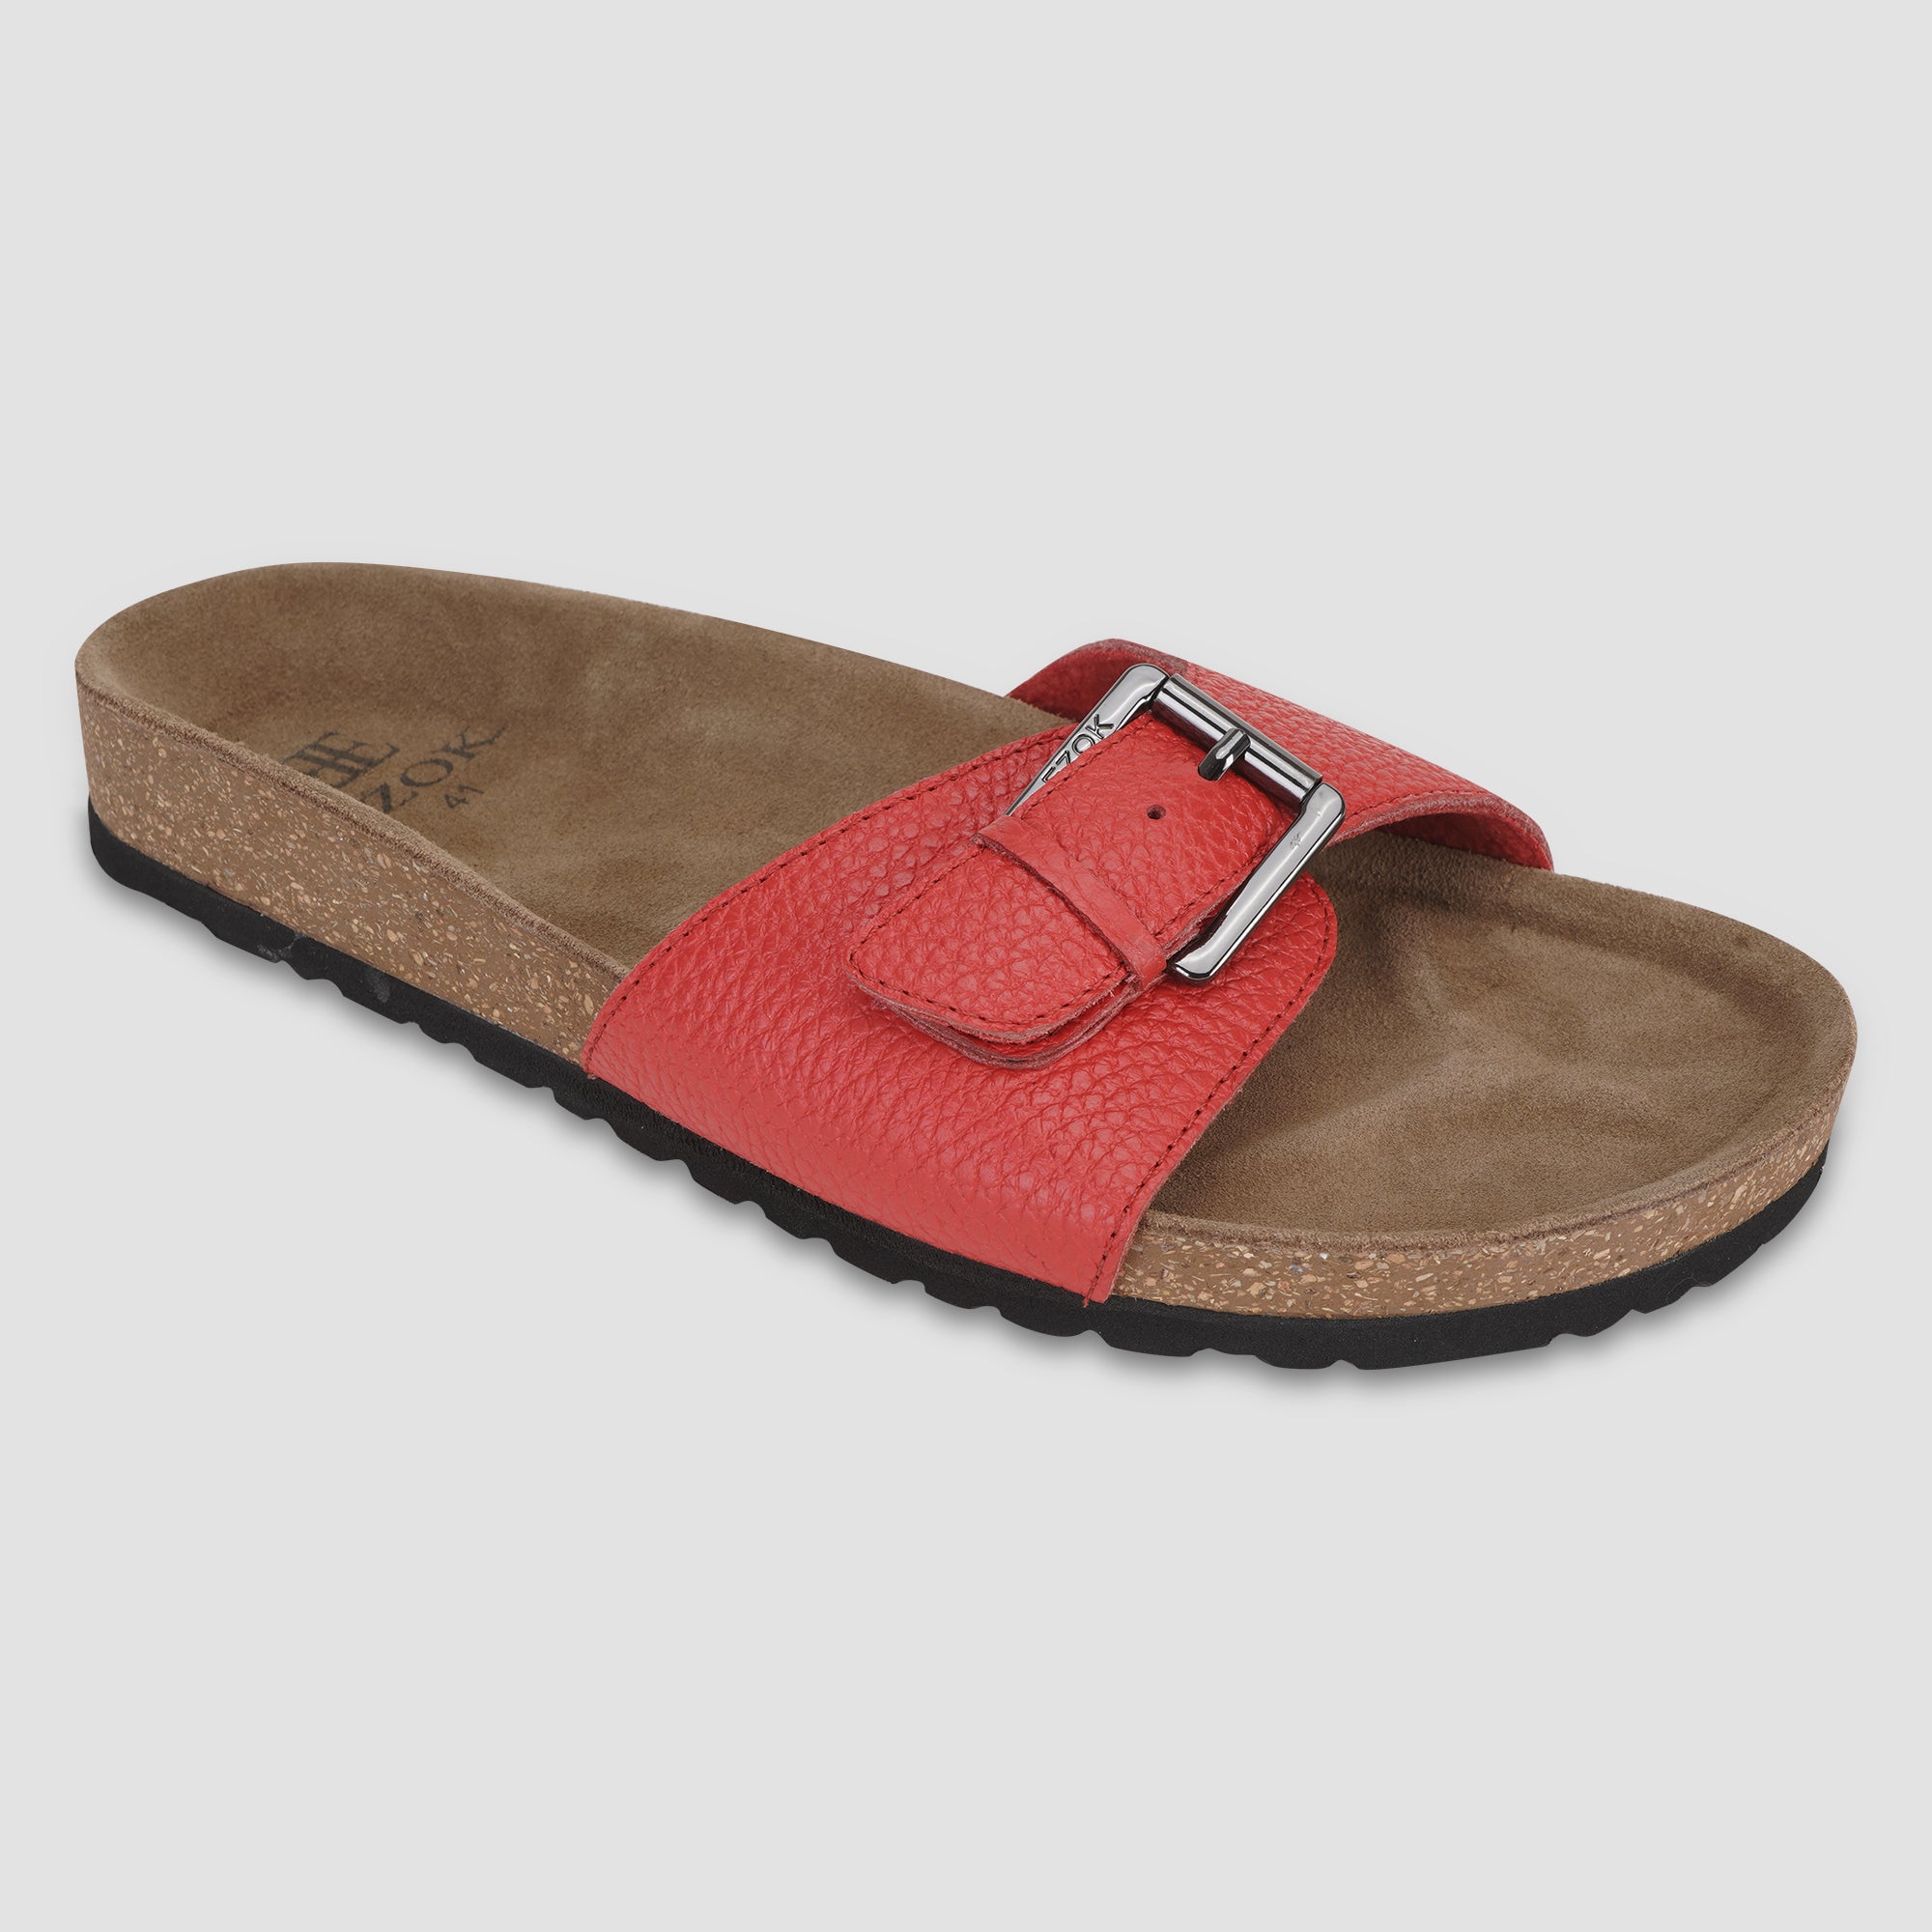 Ezok Red Leather Sandal For Men